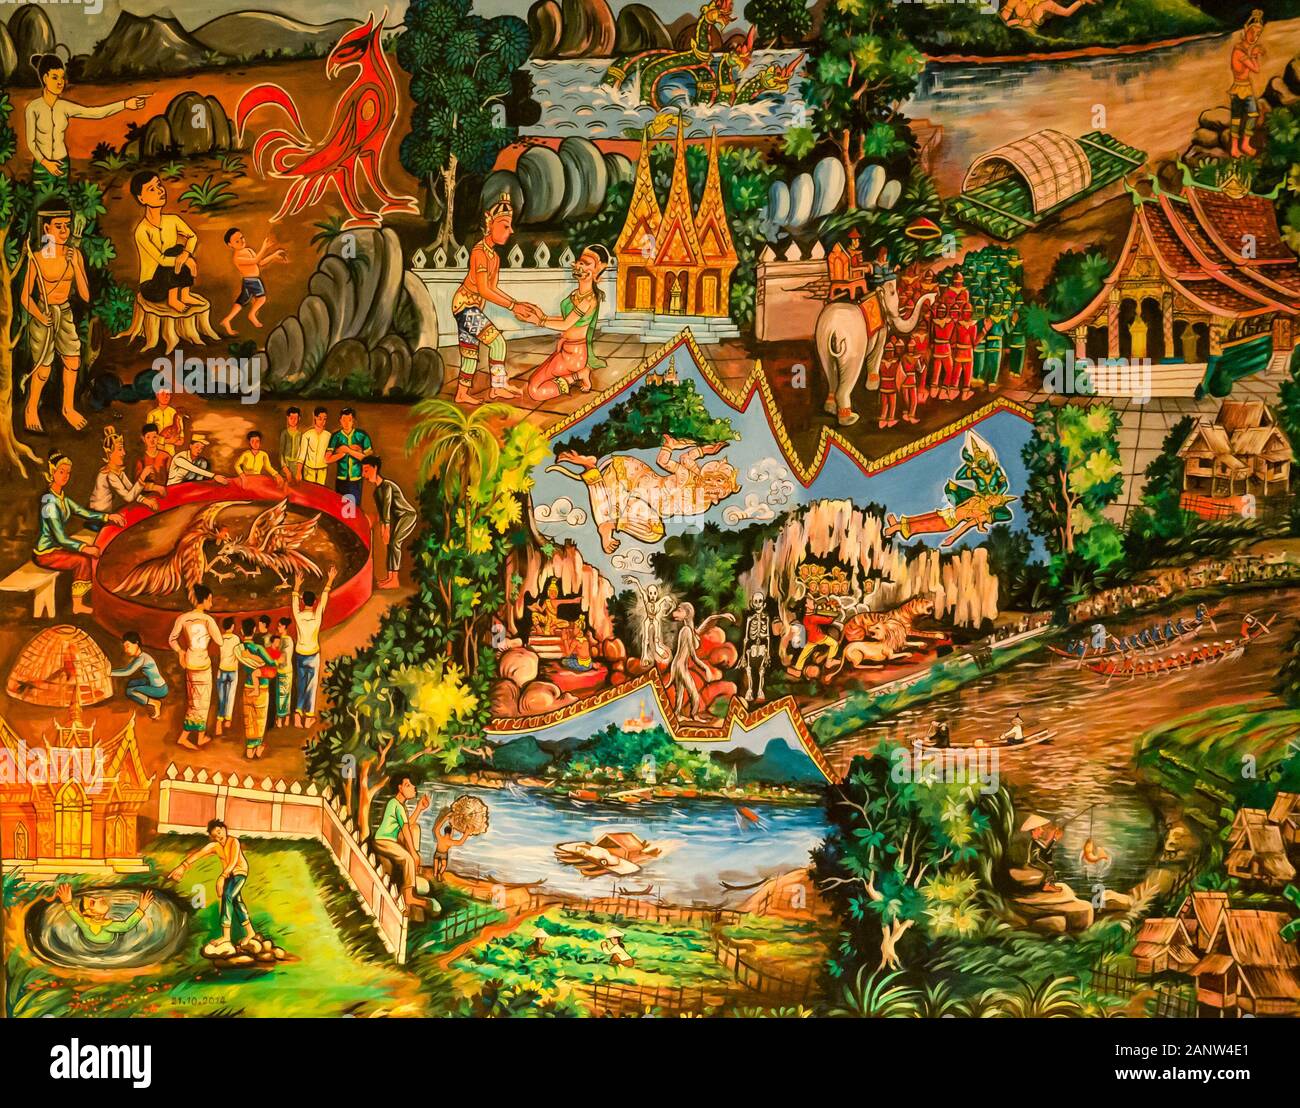 La pendaison en couleurs illustrant le folklore local, le mode de vie et narration, Luang Prabang, Laos, Asie du sud-est Banque D'Images